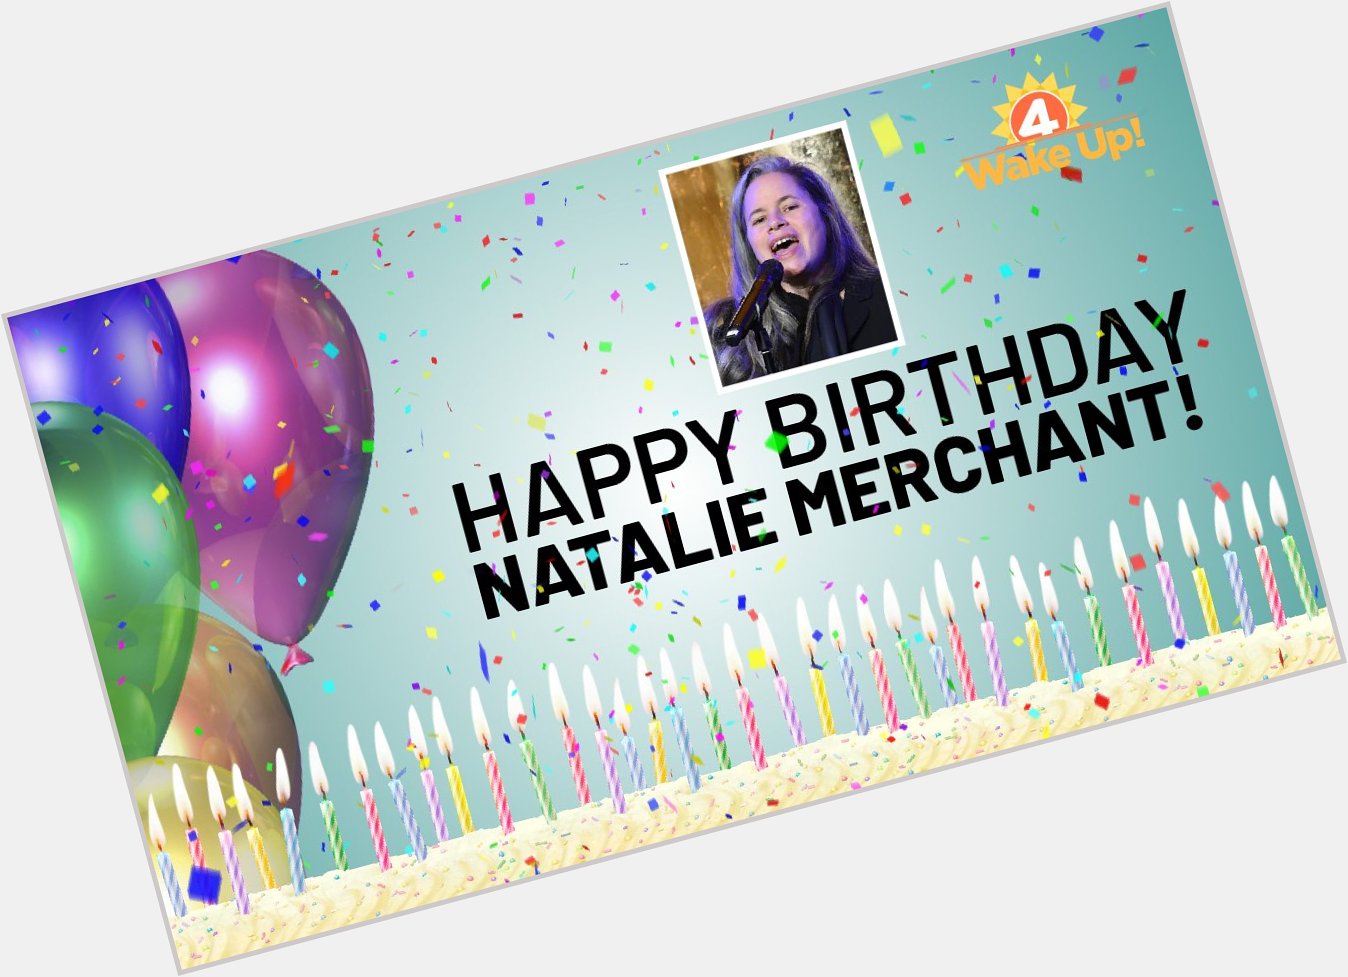 Ten thousand happy birthday wishes to the hypnotizing, mesmerizing, Jamestown\s own Natalie Merchant! 